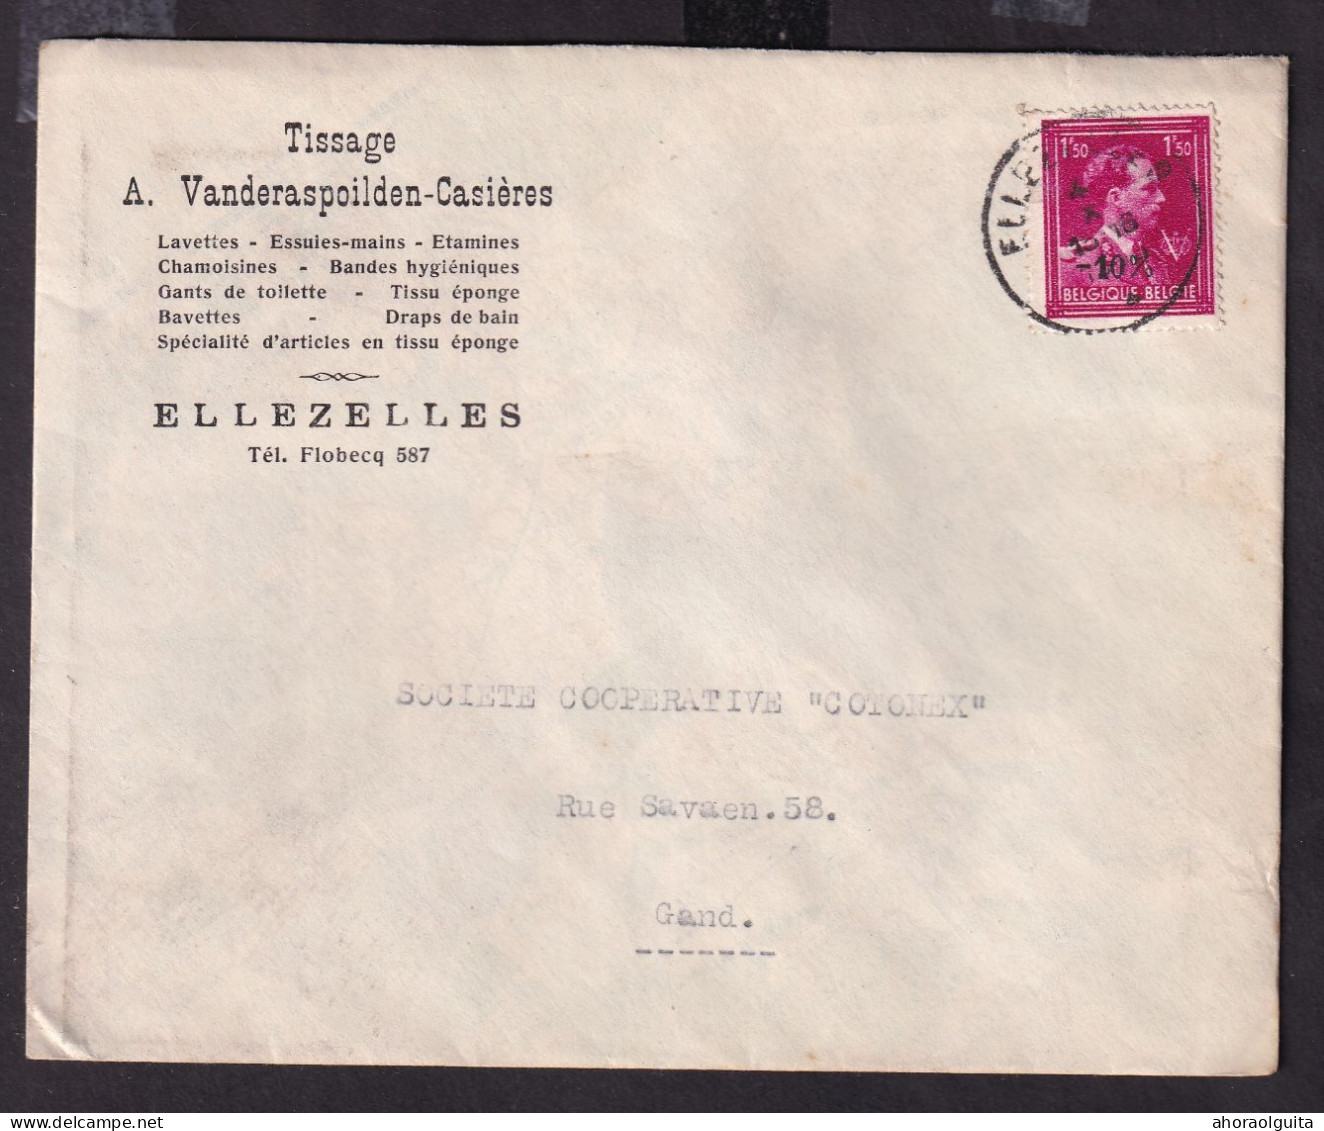 DDGG 145 -- 2 X Enveloppe TP Moins 10 % Surcharge Locale§Typo ELLEZELLES 1946 - Entete Tissage Vanderaspoilden-Casières - 1946 -10%